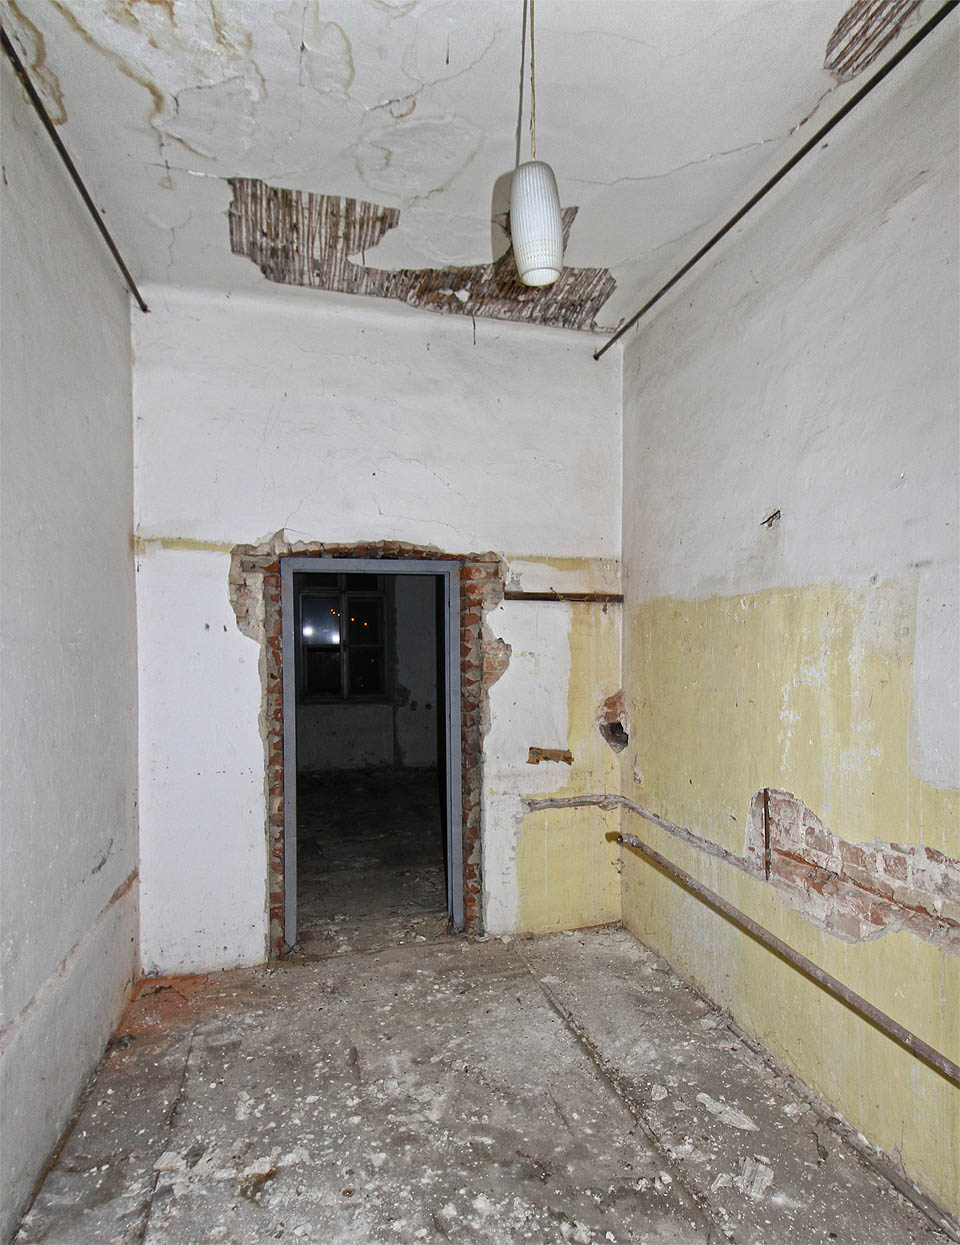 Kuchyně velikosti předsíně a moderní ocelové veřeje, které měly zabránit pokřivení původního rámu dveří při sesedání domu nad vyraženými tunely.